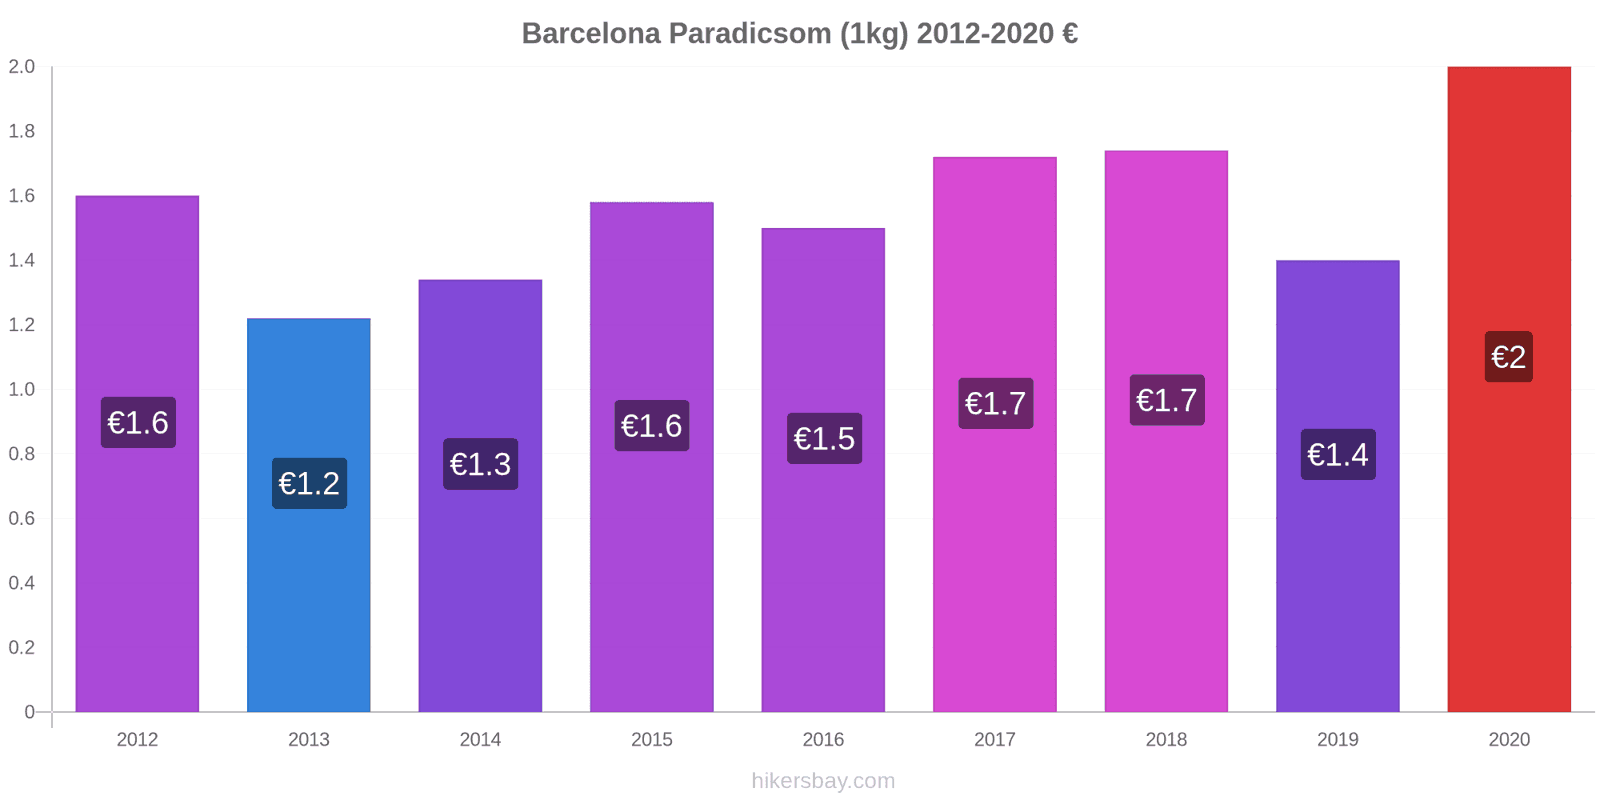 Barcelona árváltozások Paradicsom (1kg) hikersbay.com